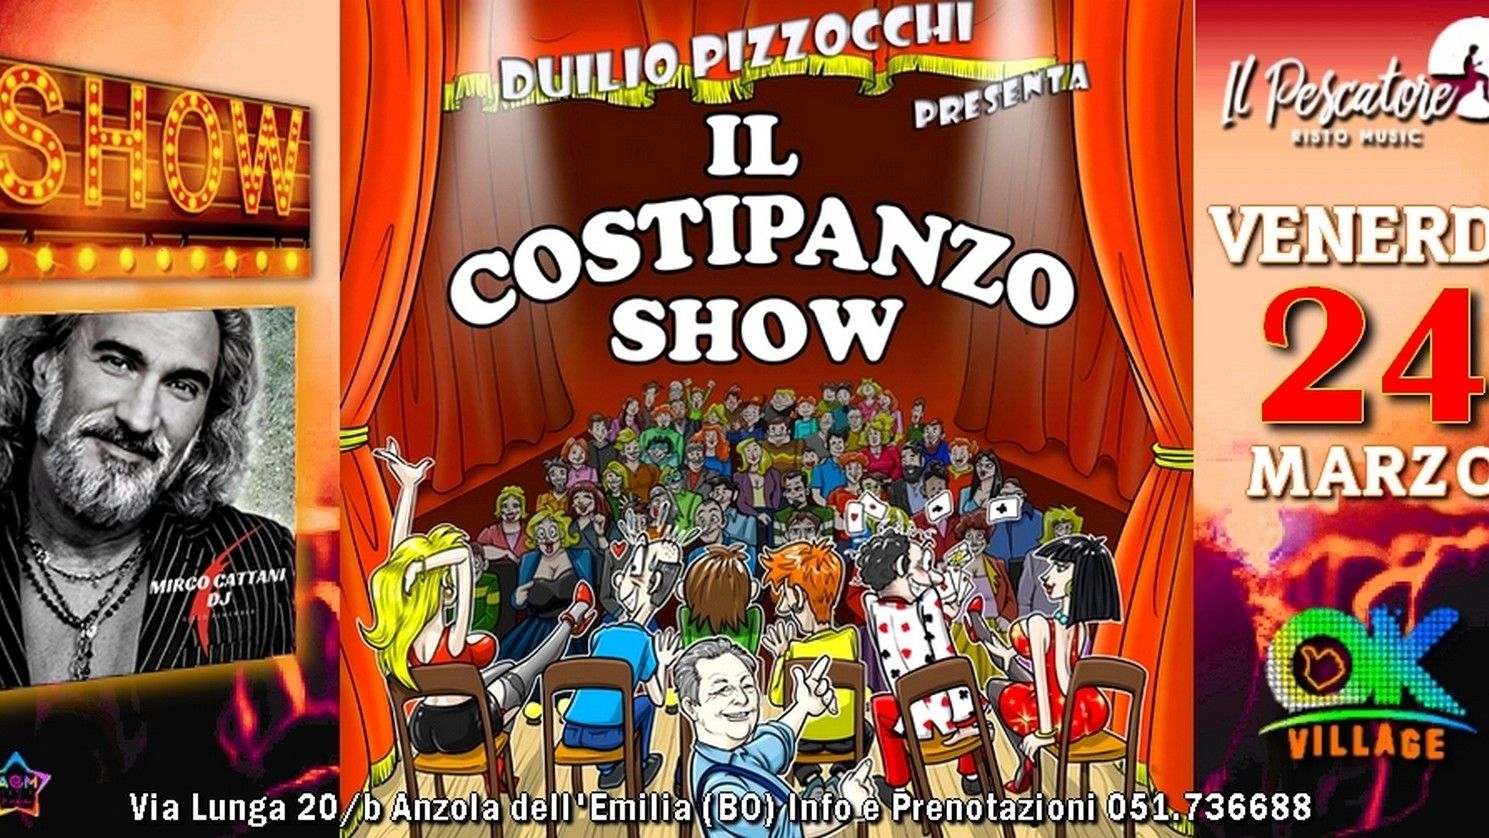 Il Costipanzo Show con Duilio Pizzocchi & Friends